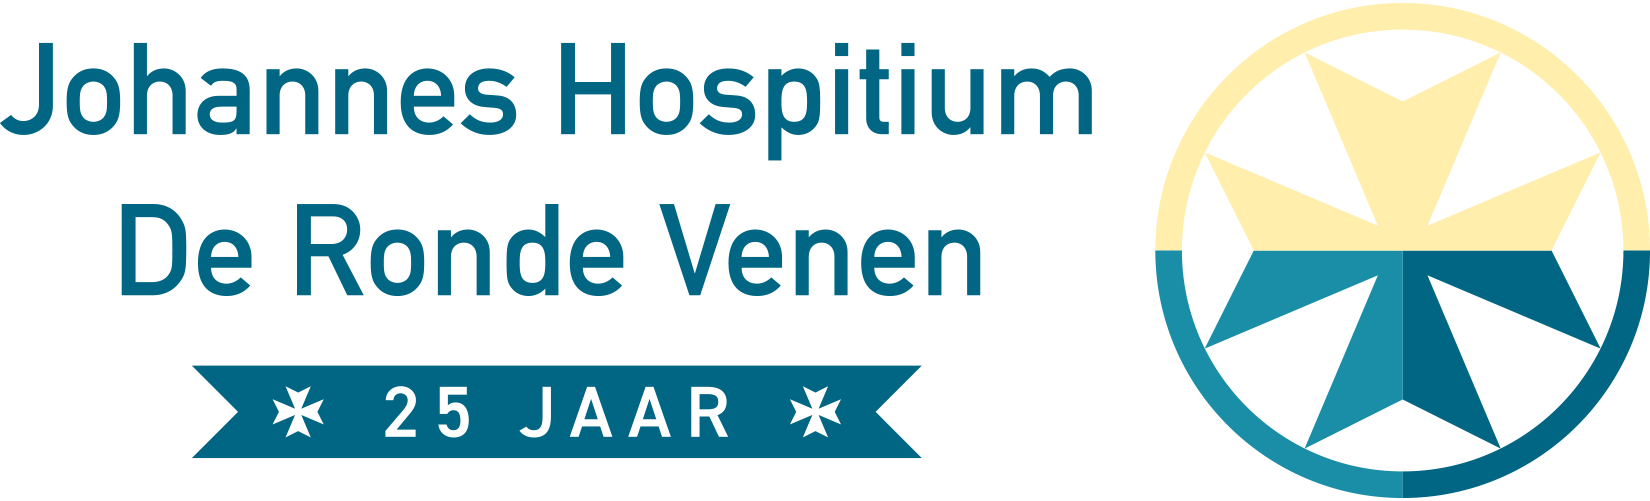 johannes-hospitium-logo-25jaar-rgb-v2